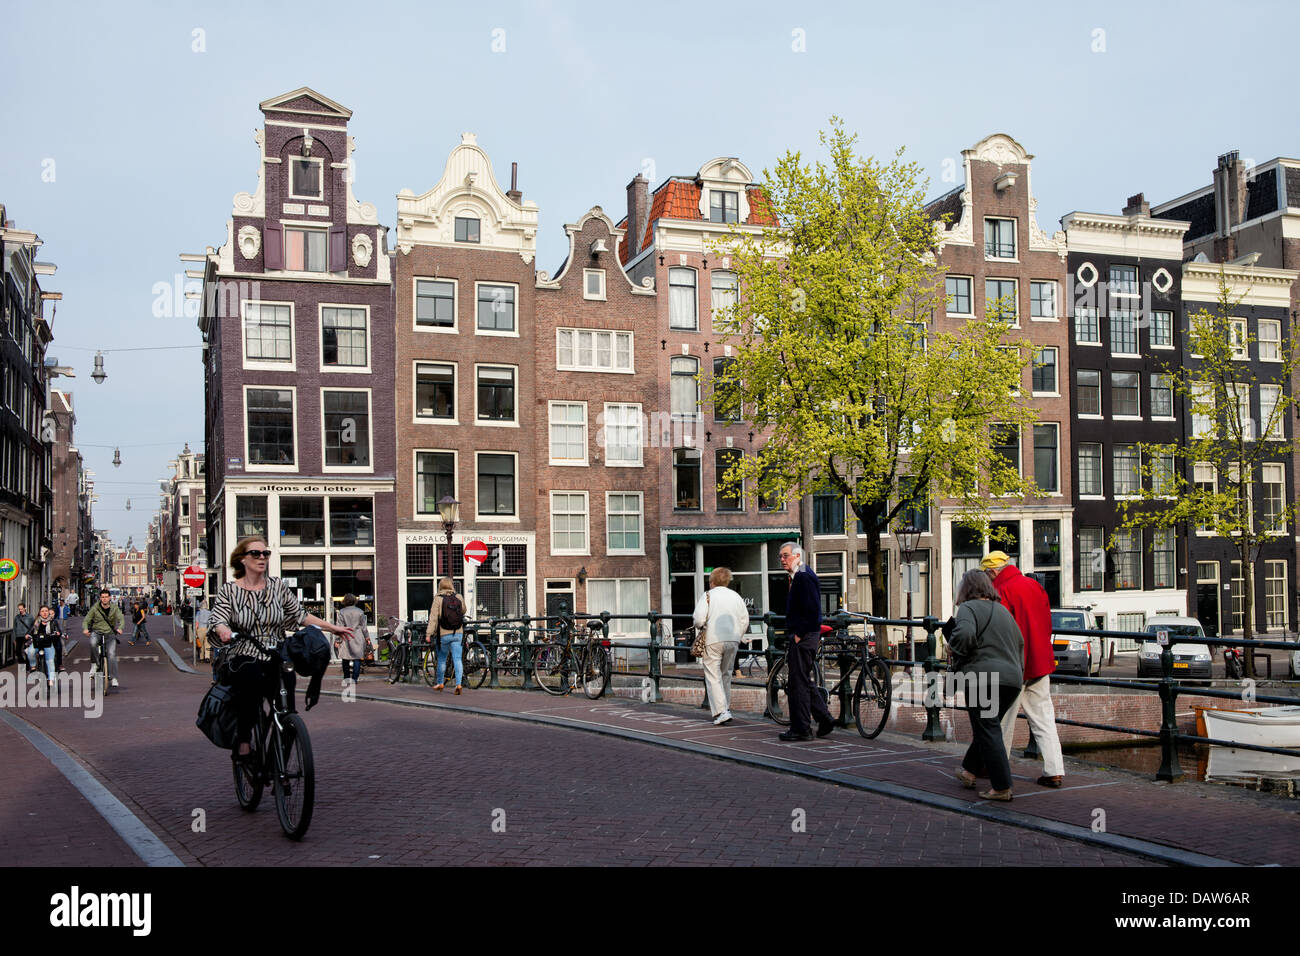 Leben in der Stadt Amsterdam beherbergt traditionelle niederländische am Singel-Kanal, Nordholland, Niederlande. Stockfoto